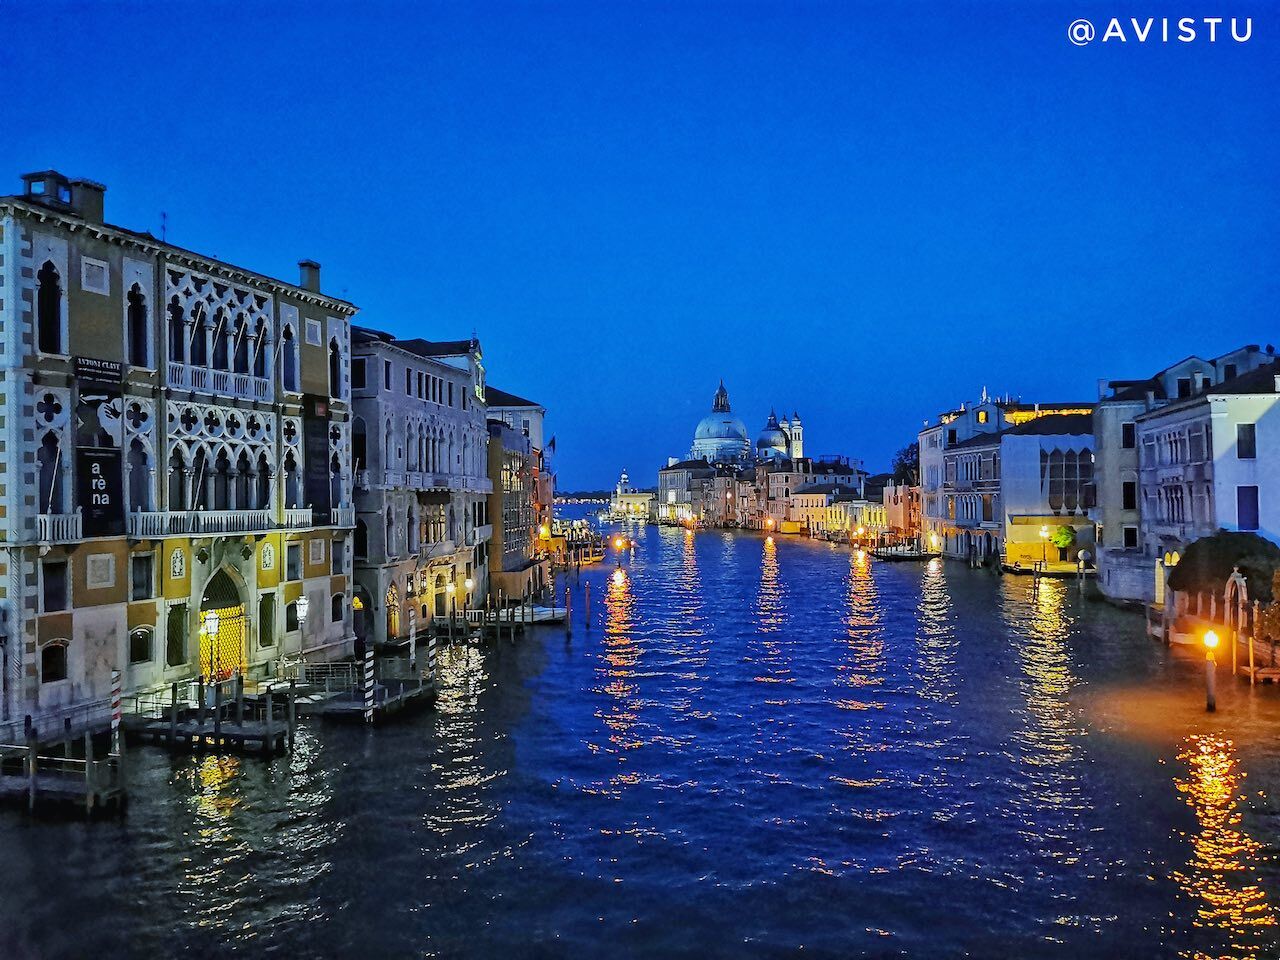 El Gran Canal de Venecia tras ponerse el sol [(c) Foto: @avistu]